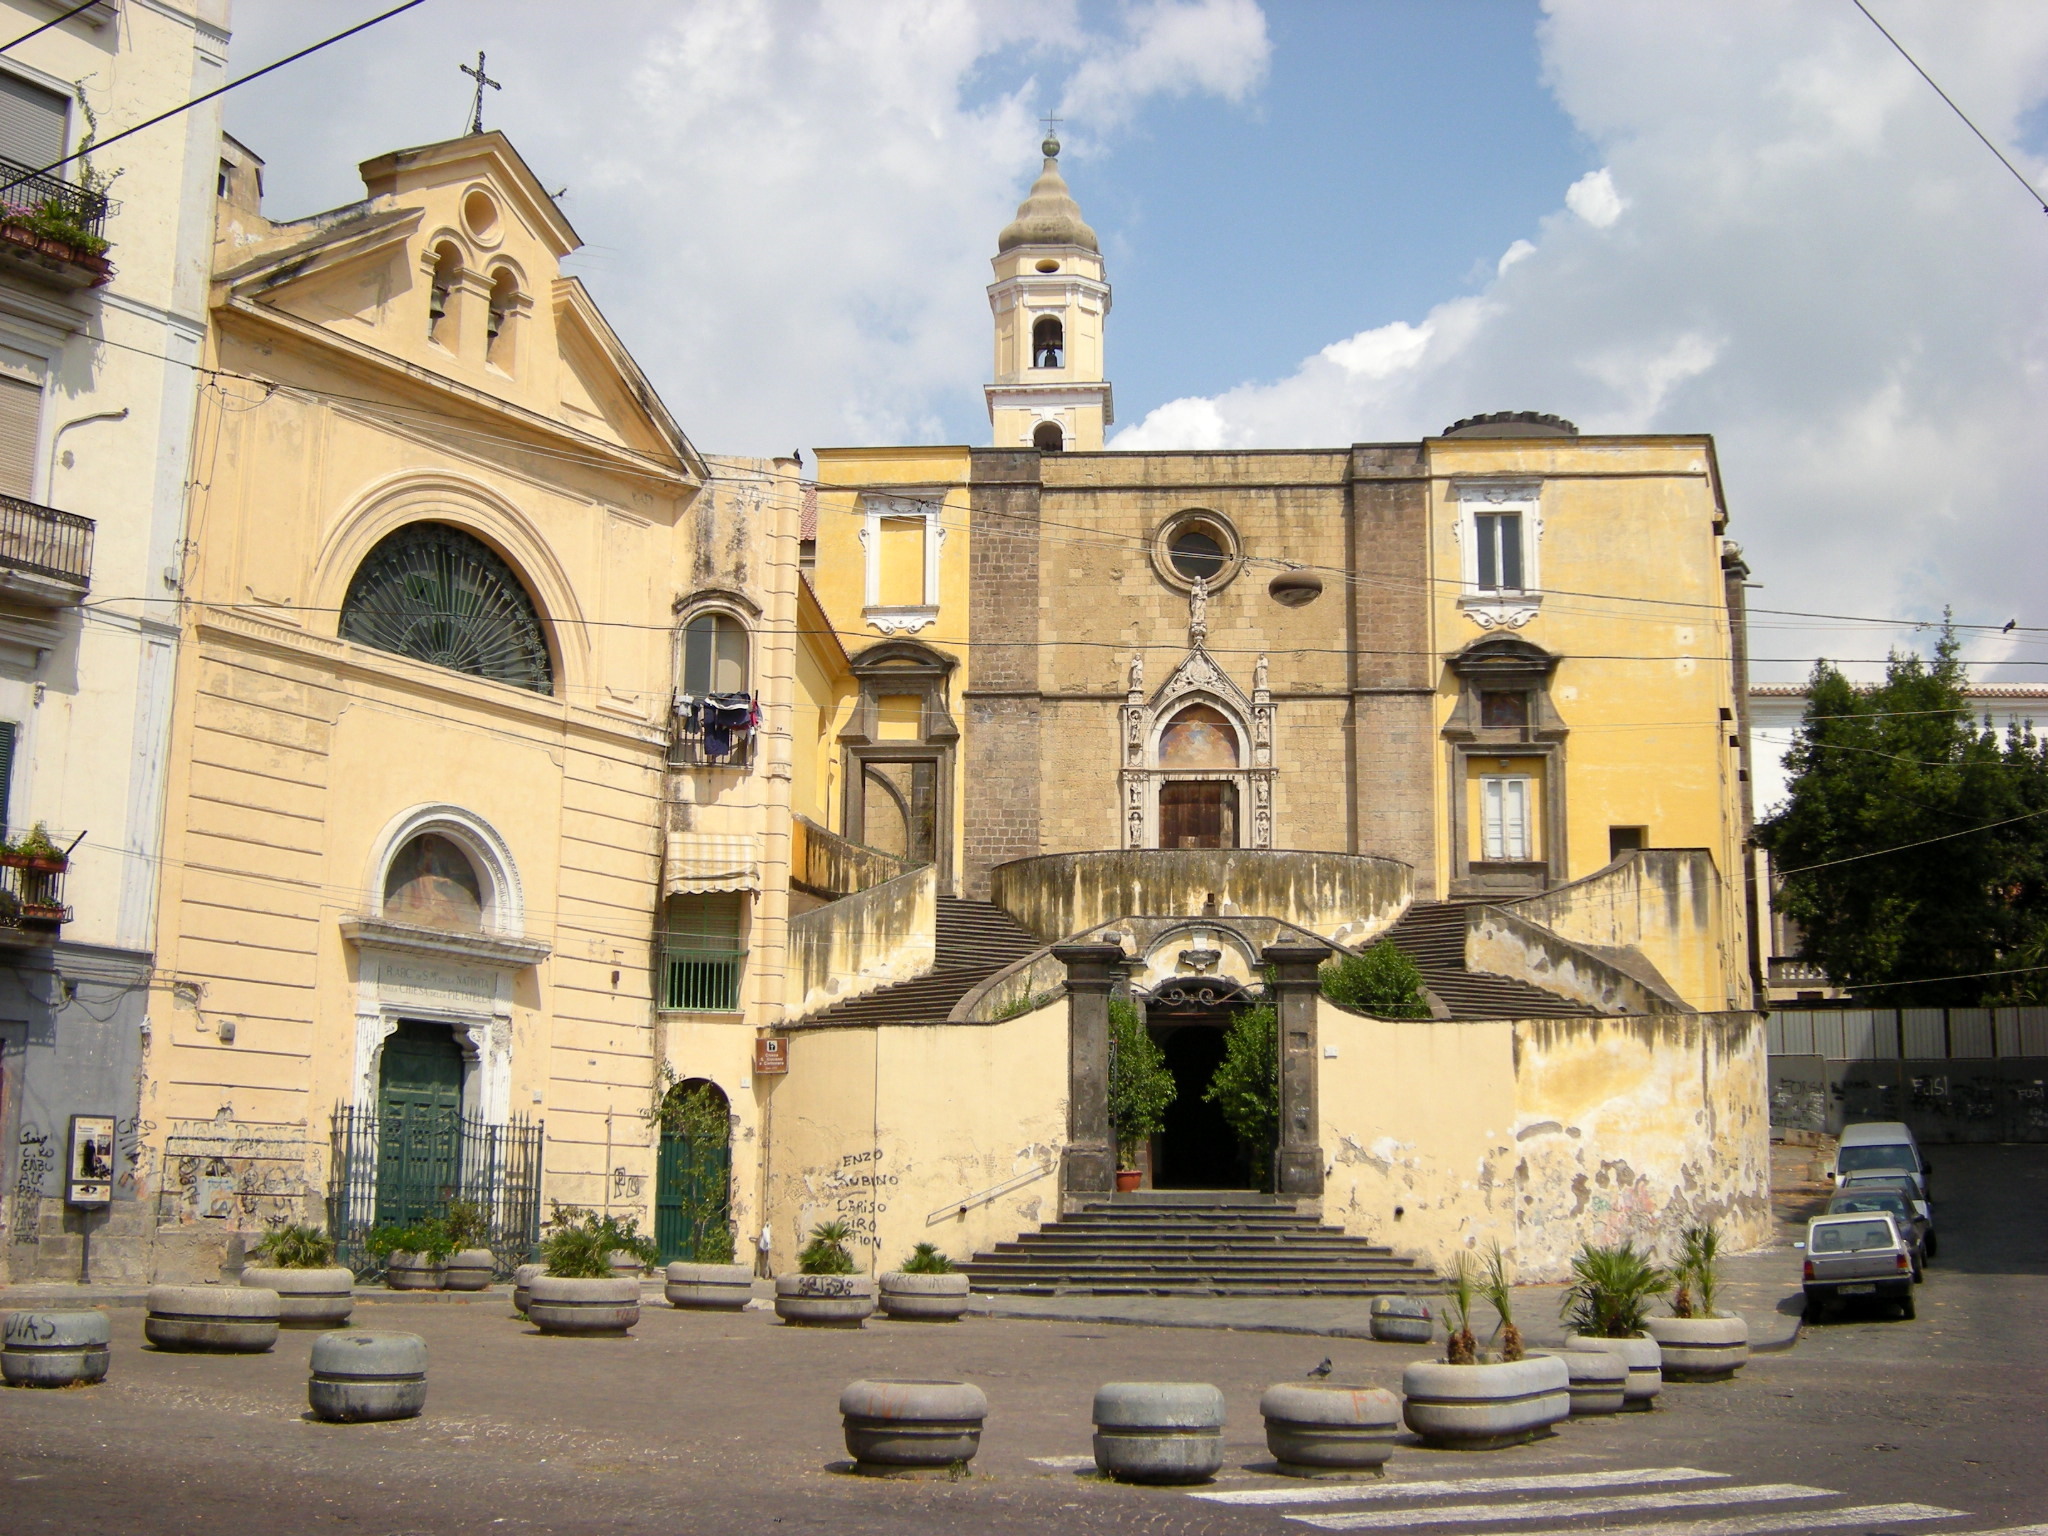 Kirche San Giovanni in Carbonara, Wiedereröffnung nach 18-monatiger Unterbrechung